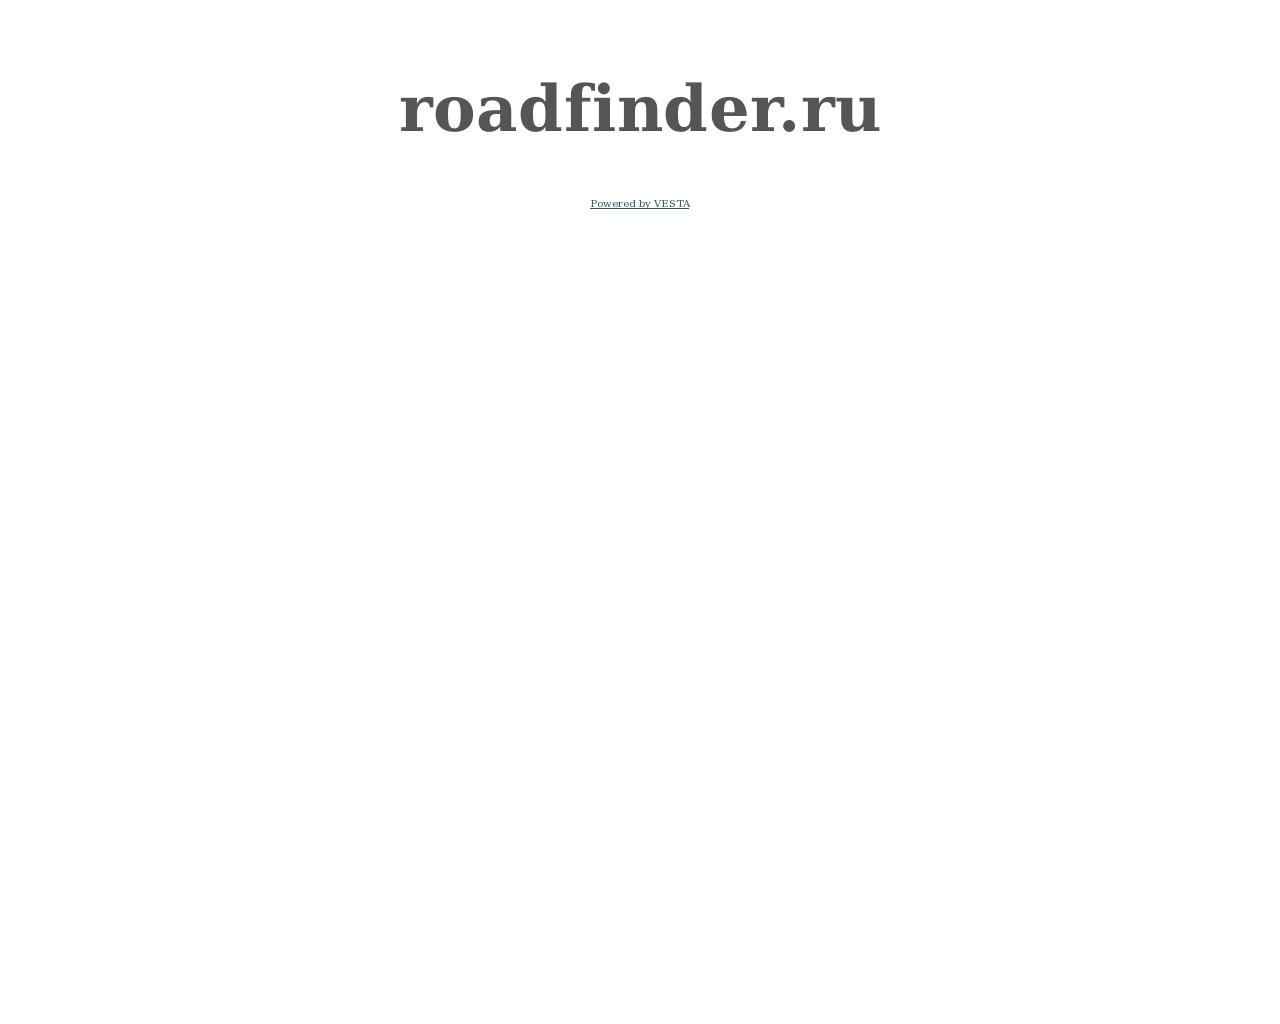 Изображение сайта roadfinder.ru в разрешении 1280x1024